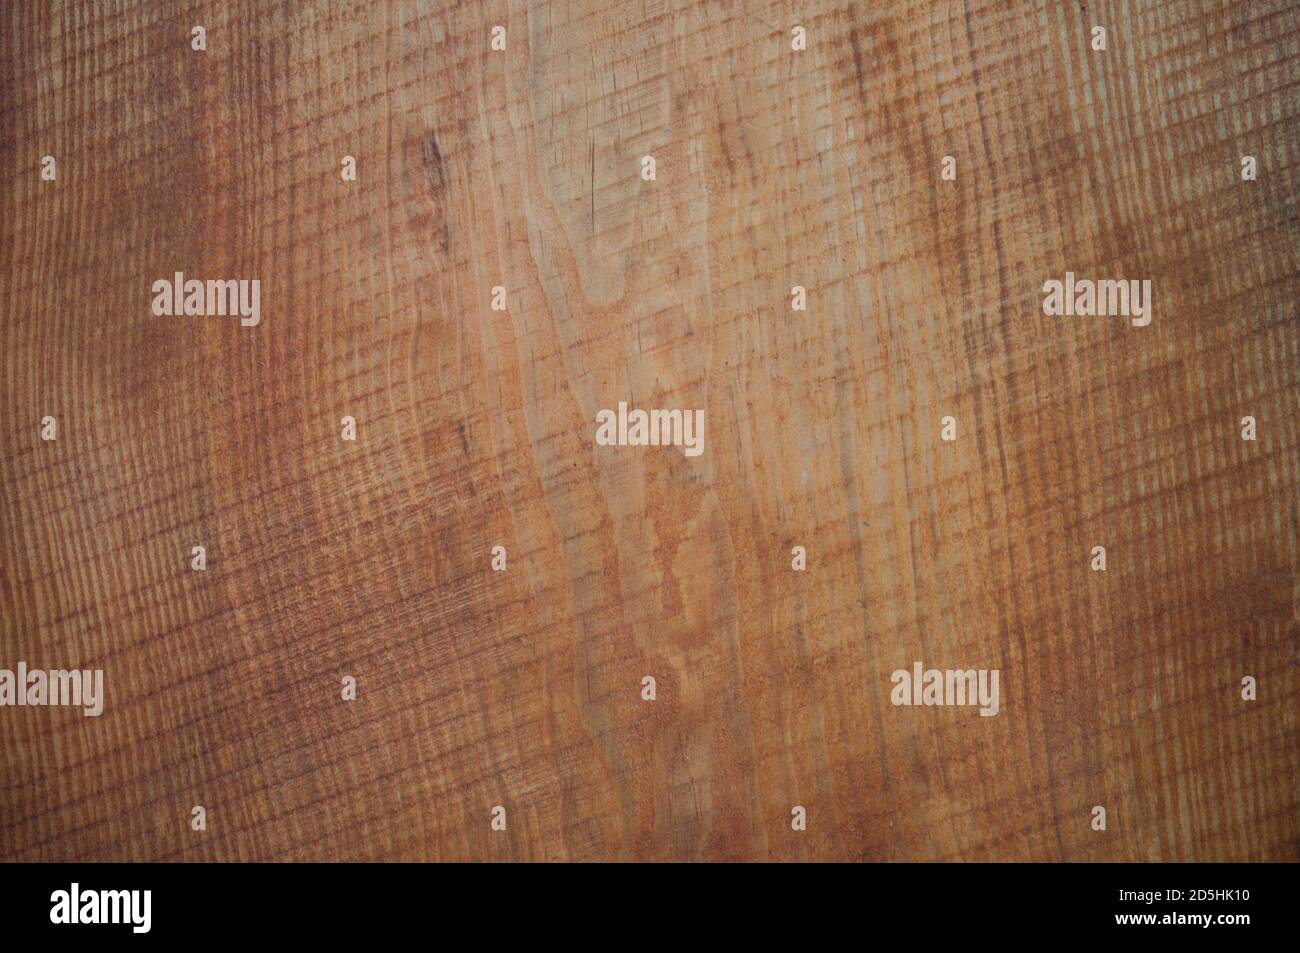 Bild einer Kiefer im Schnitt mit Spuren von Sägemehl, diagonale Linien. Baum Hintergrund, Rostfarbe Baum Stockfoto